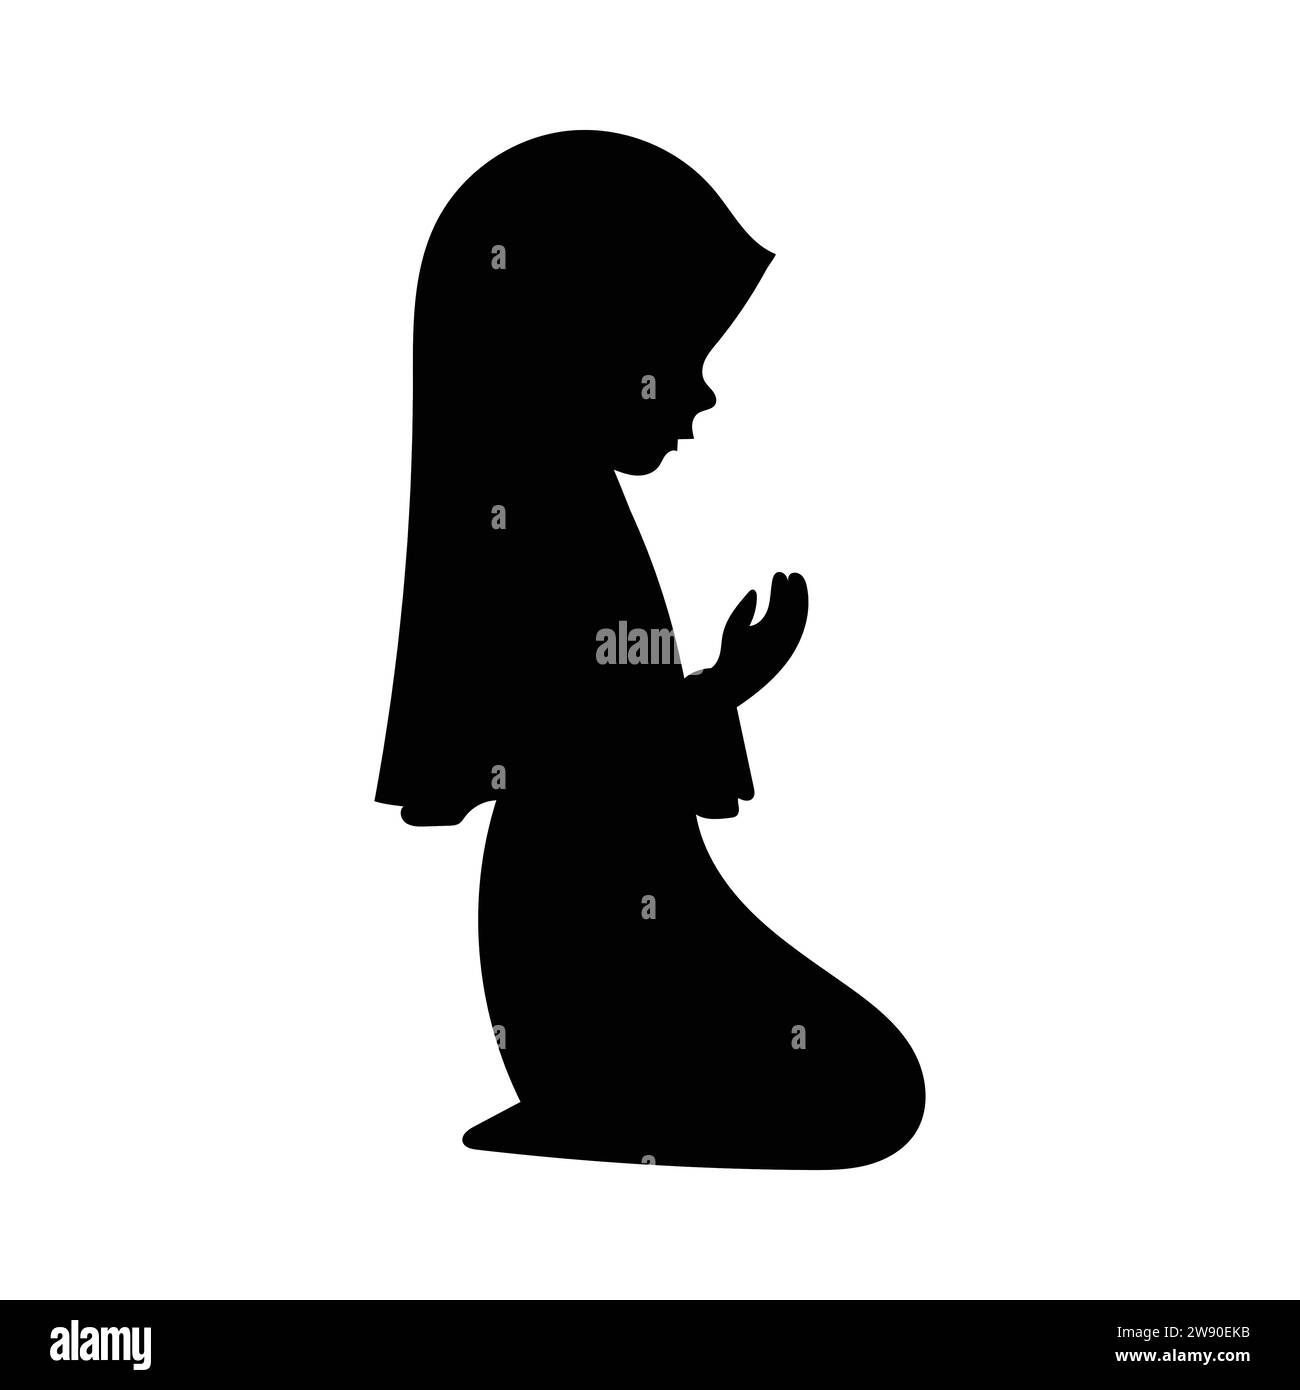 Une silhouette de jeune fille solennellement musulmane levant les mains dans la prière, agenouillée et inclinée, illustration vectorielle, isolée sur fond blanc. Illustration de Vecteur